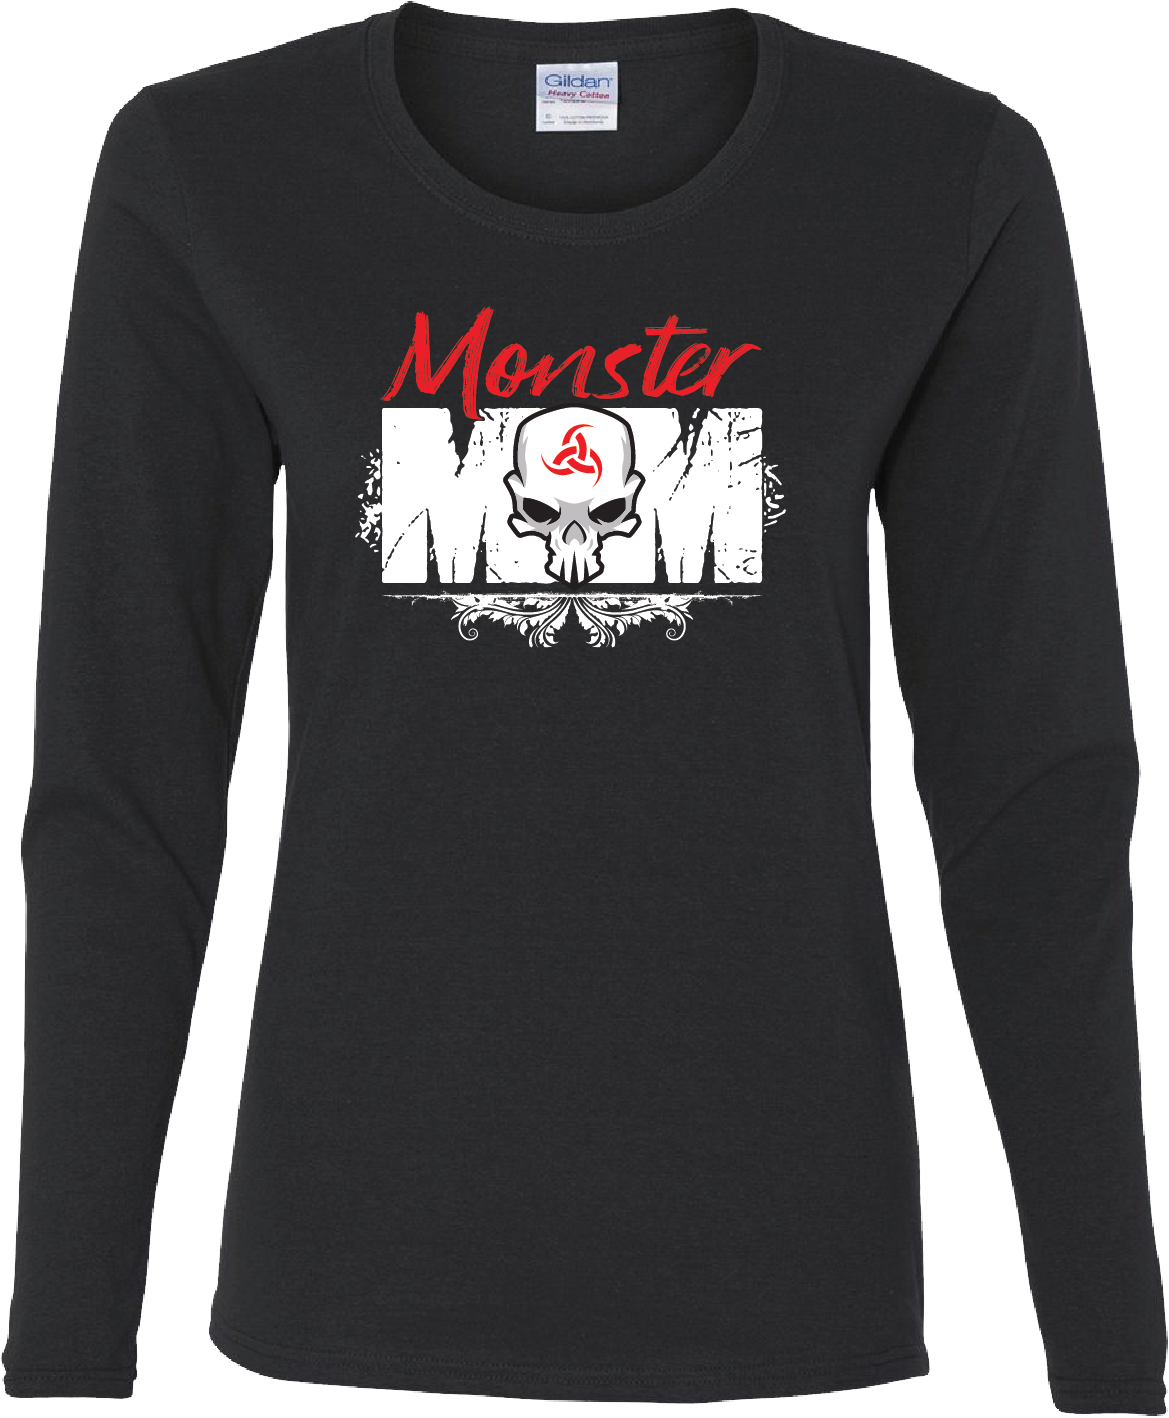 Womens Long Sleeve T-Shirt - Monster Mom